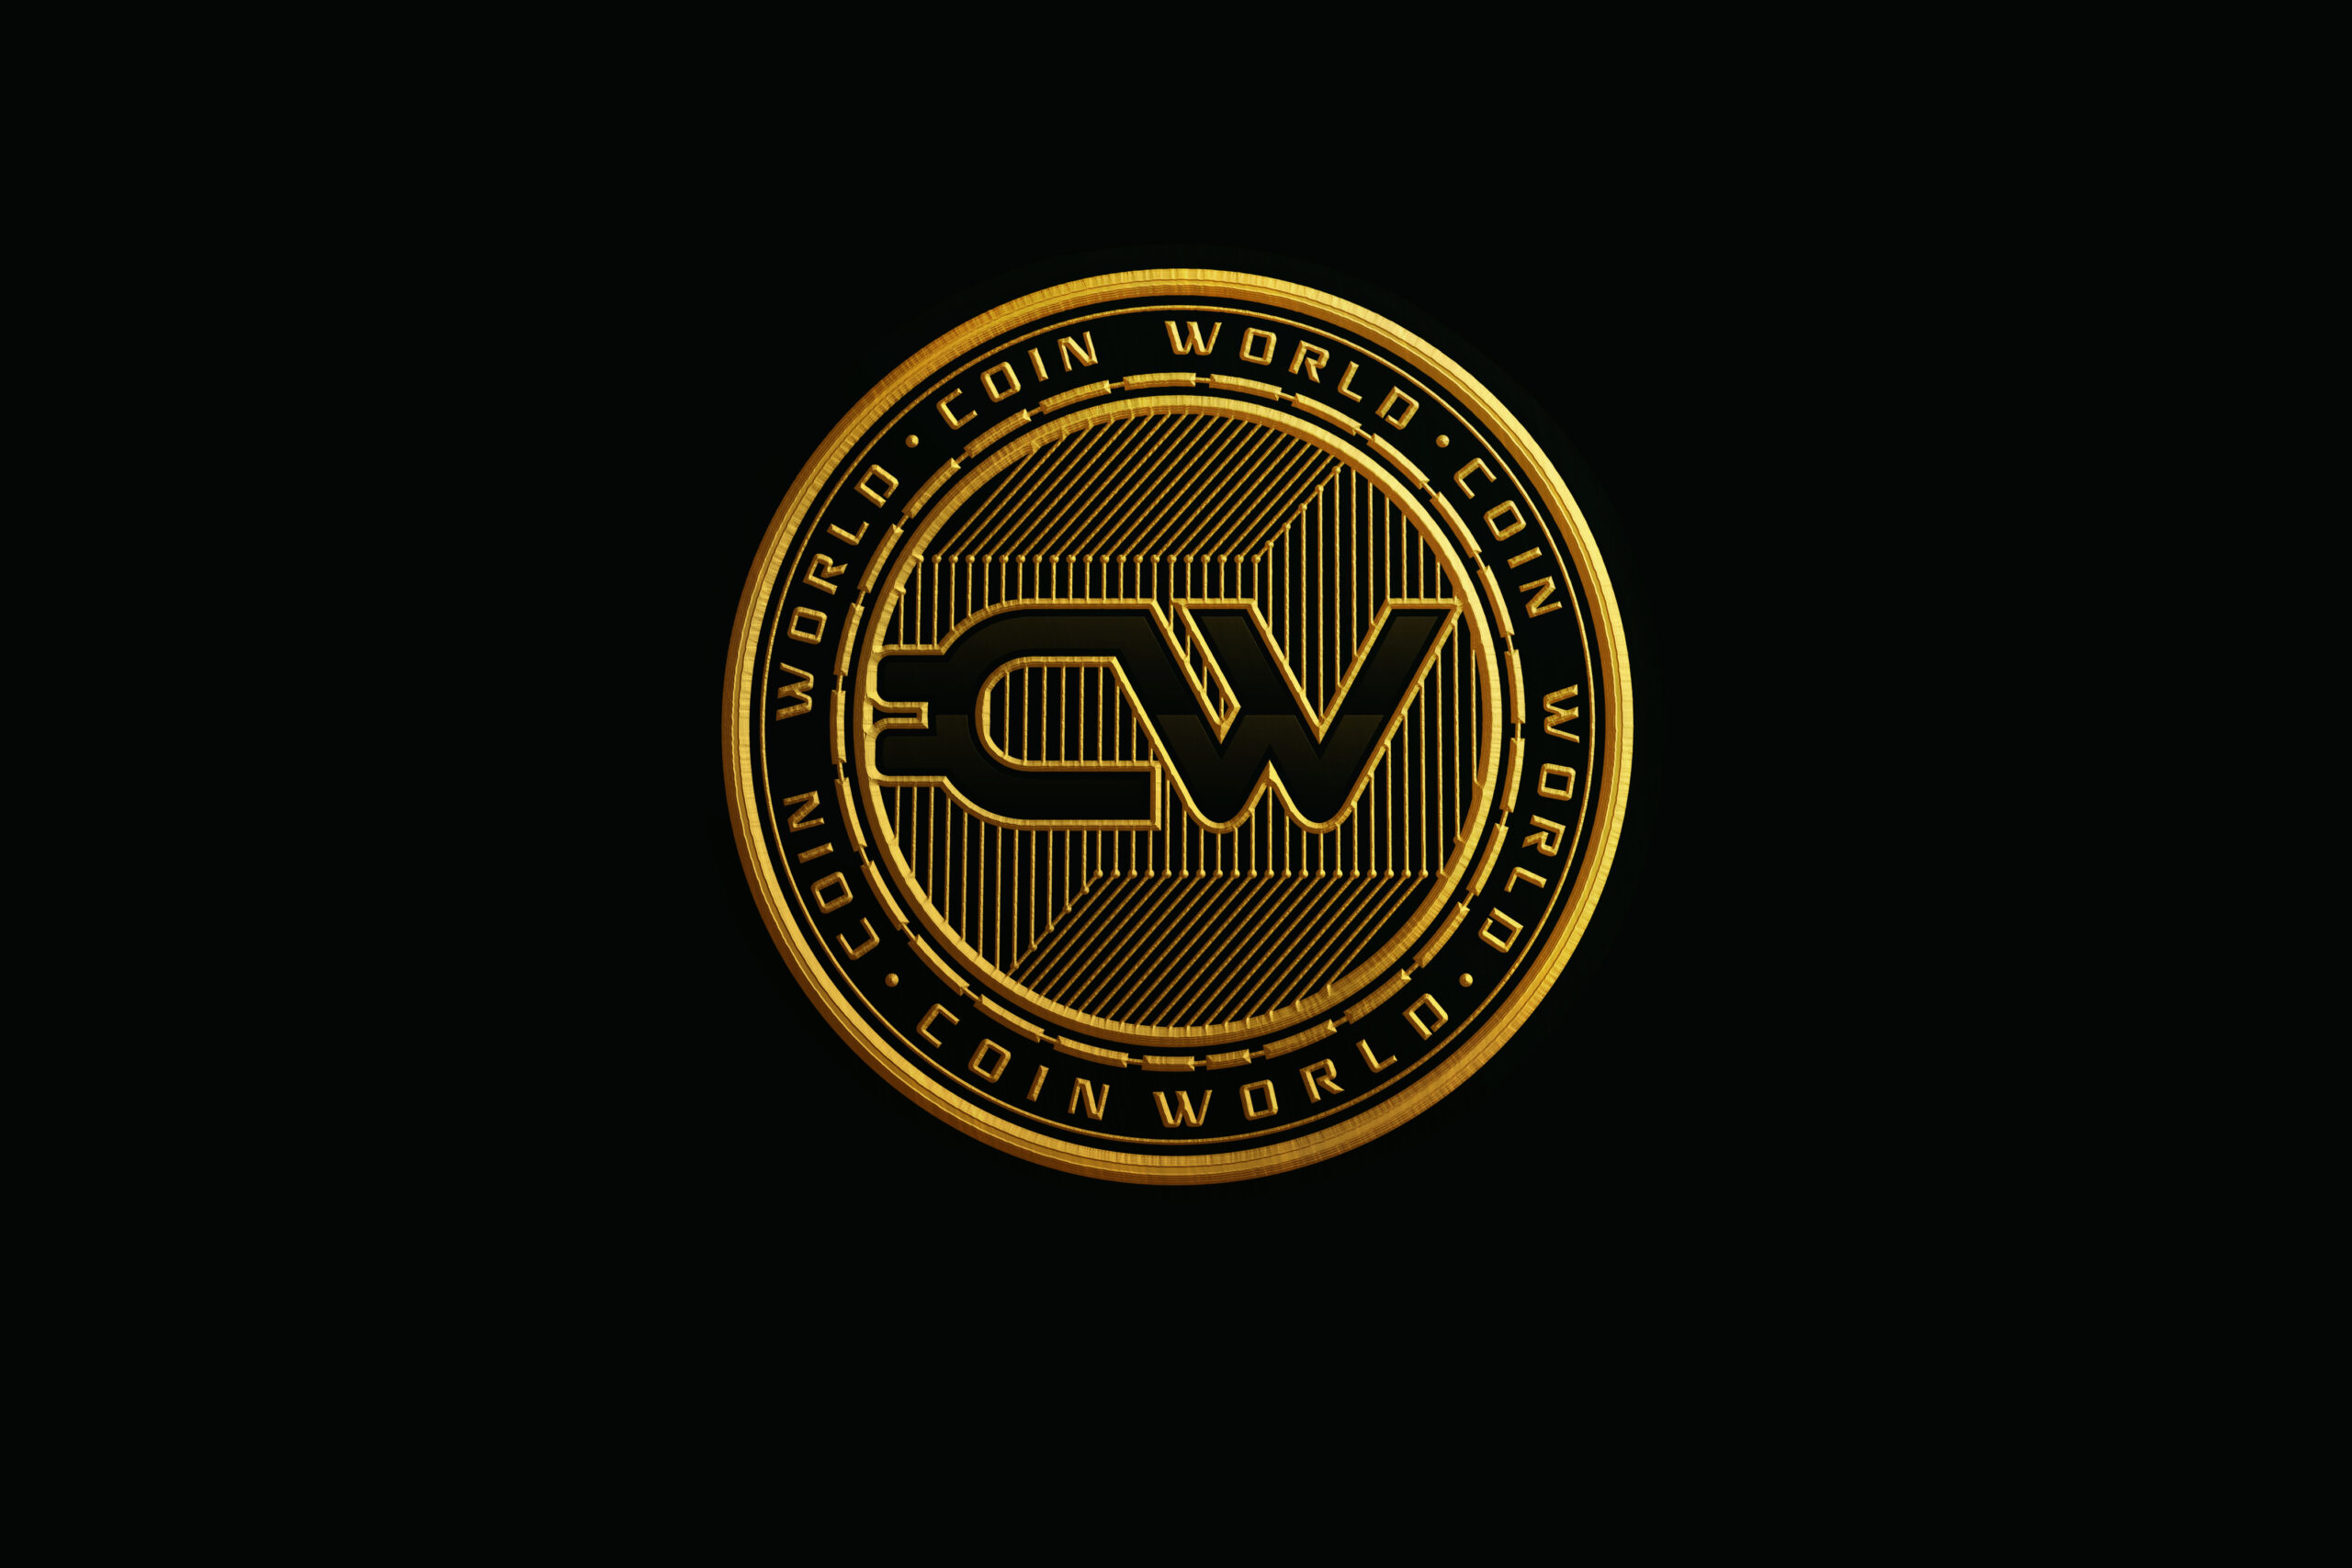 Coin World Inc